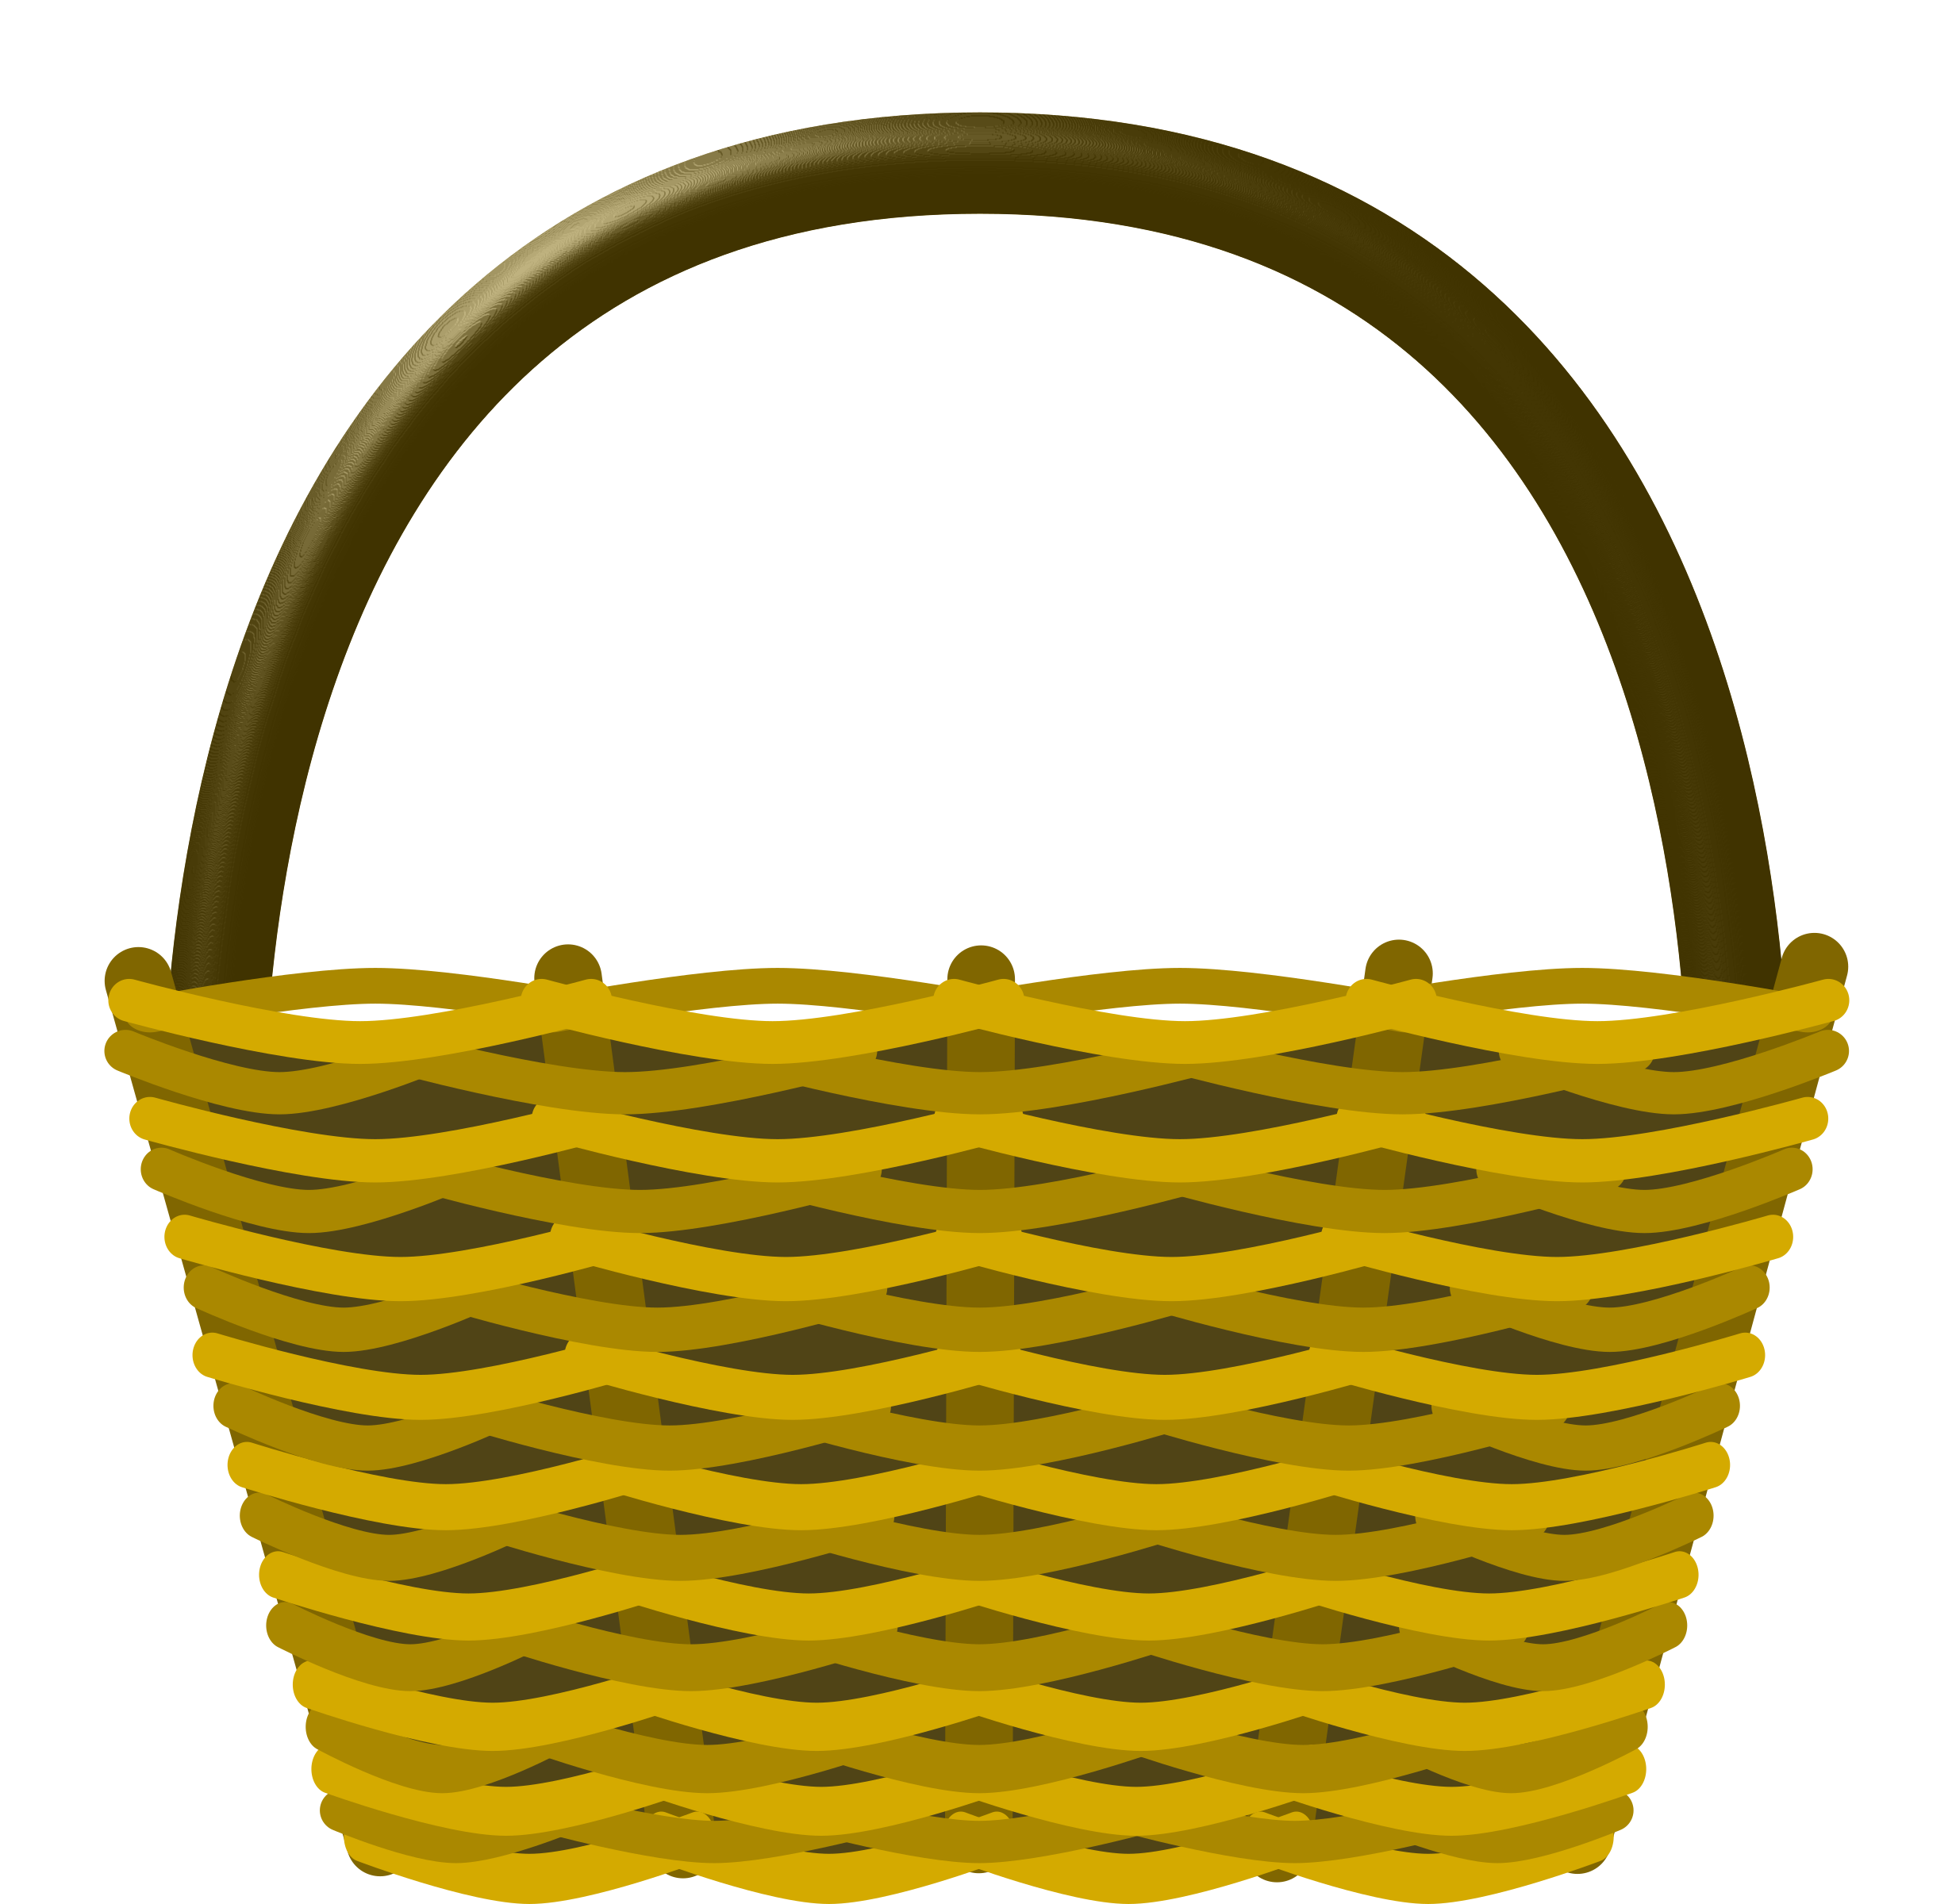 Download PNG image - Empty Easter Basket PNG Transparent Image 